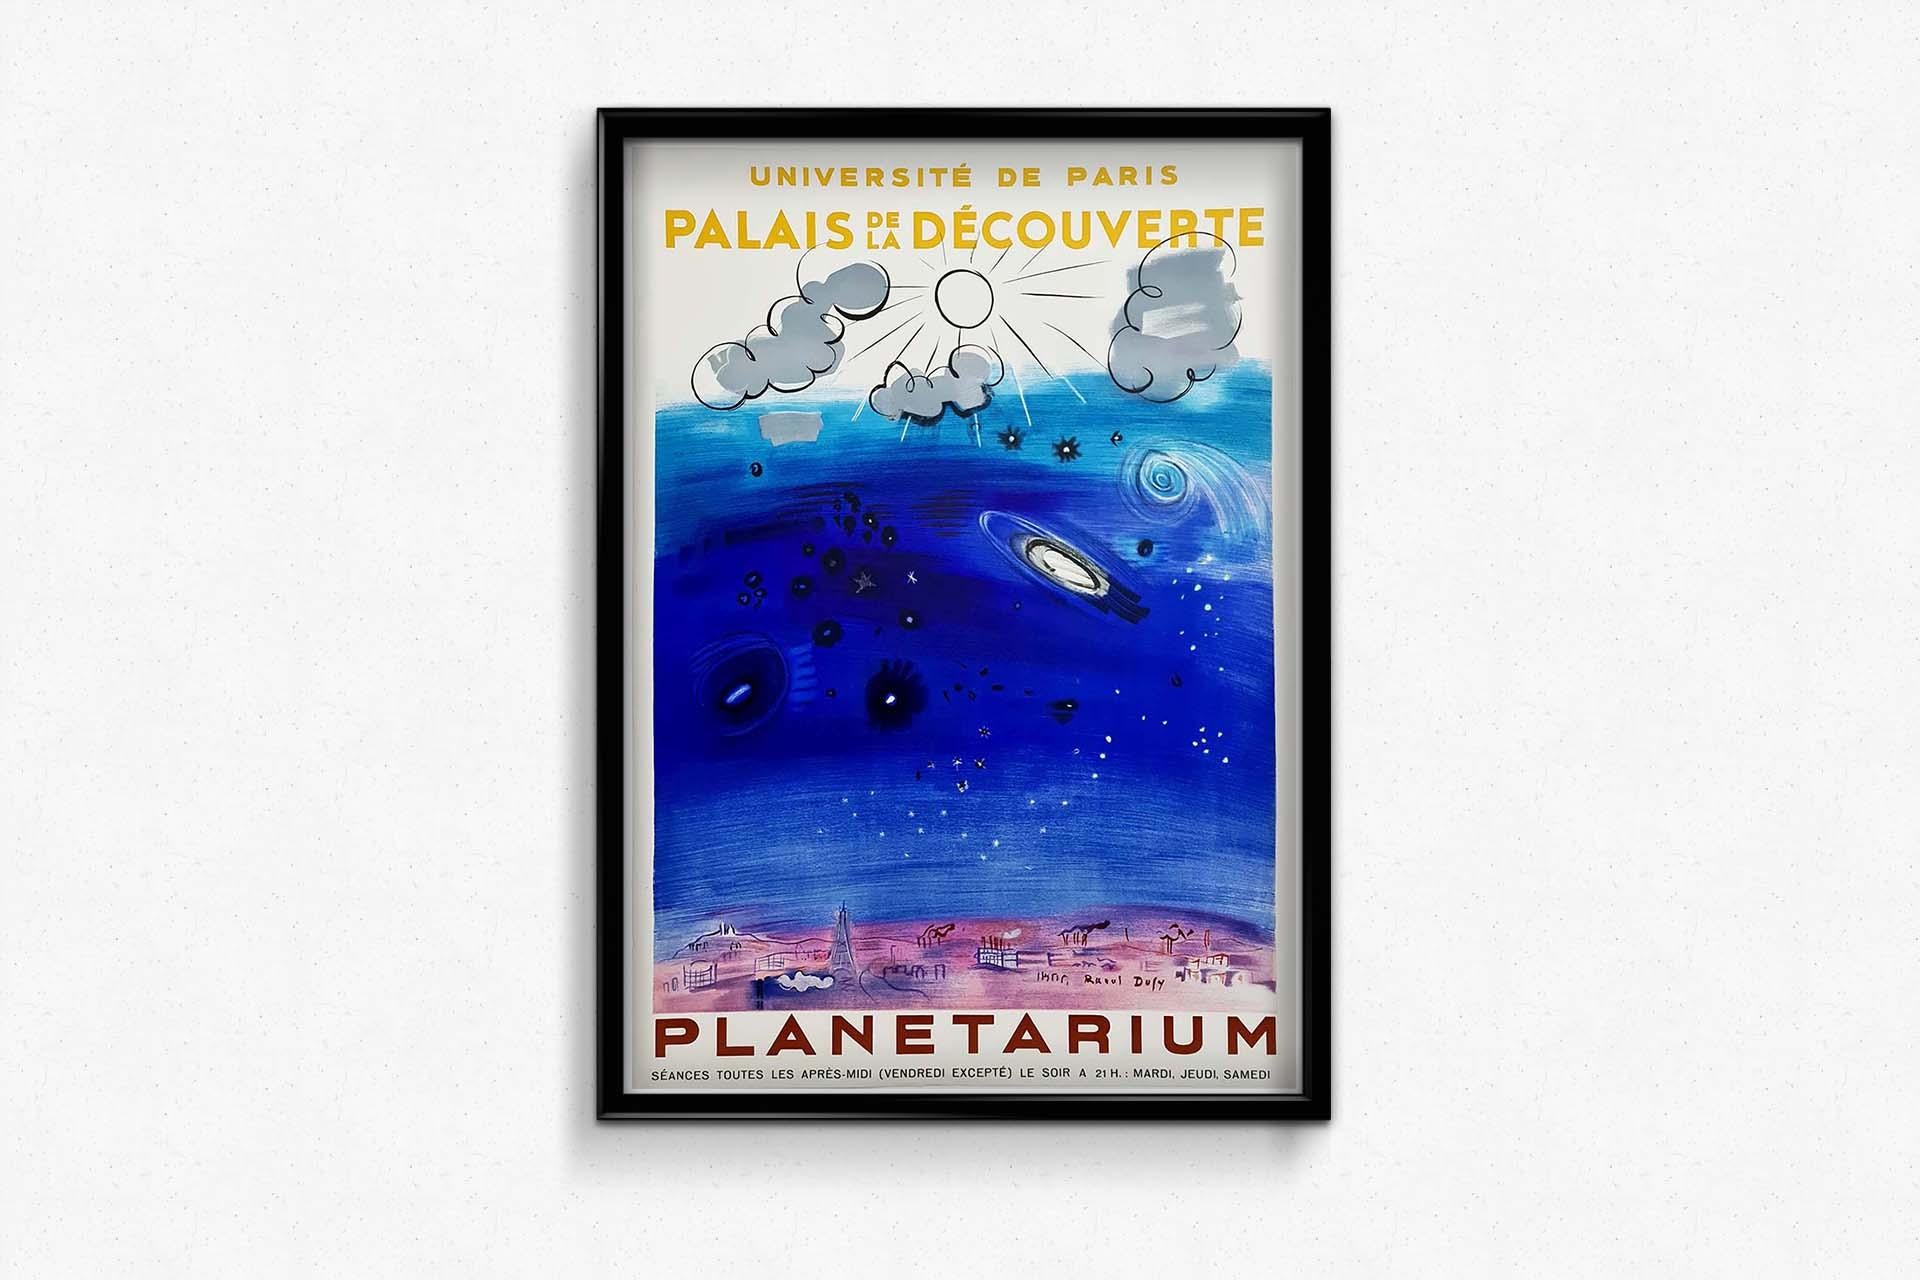 Original Poster by Raoul Dufy for the Planetarium at the Palais de la découverte 1